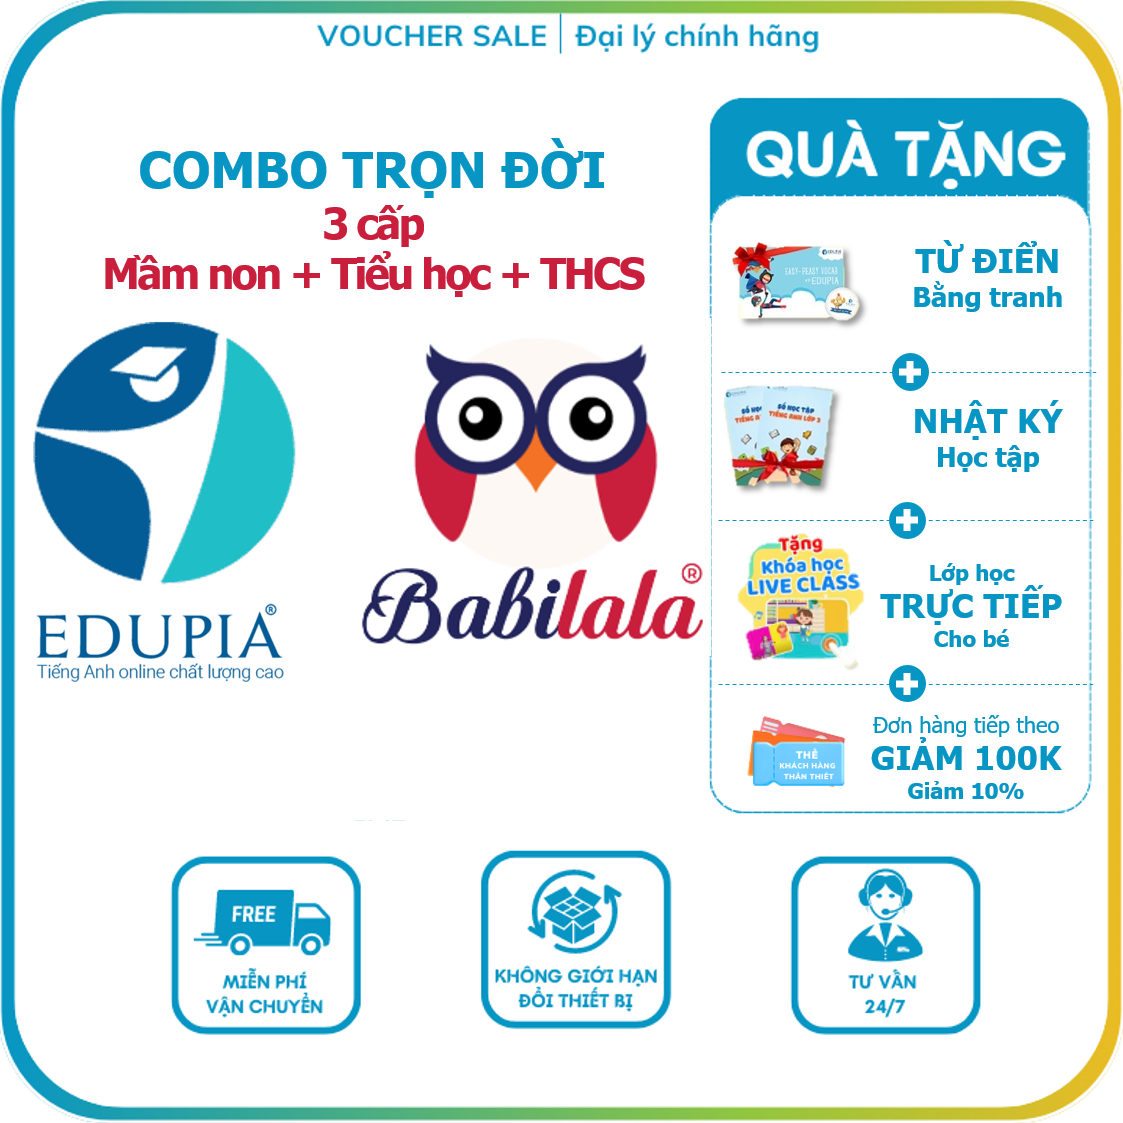 Combo TRỌN ĐỜI 3 cấp Babilala+ Edupia Tiểu học+THCS - Toànquốc